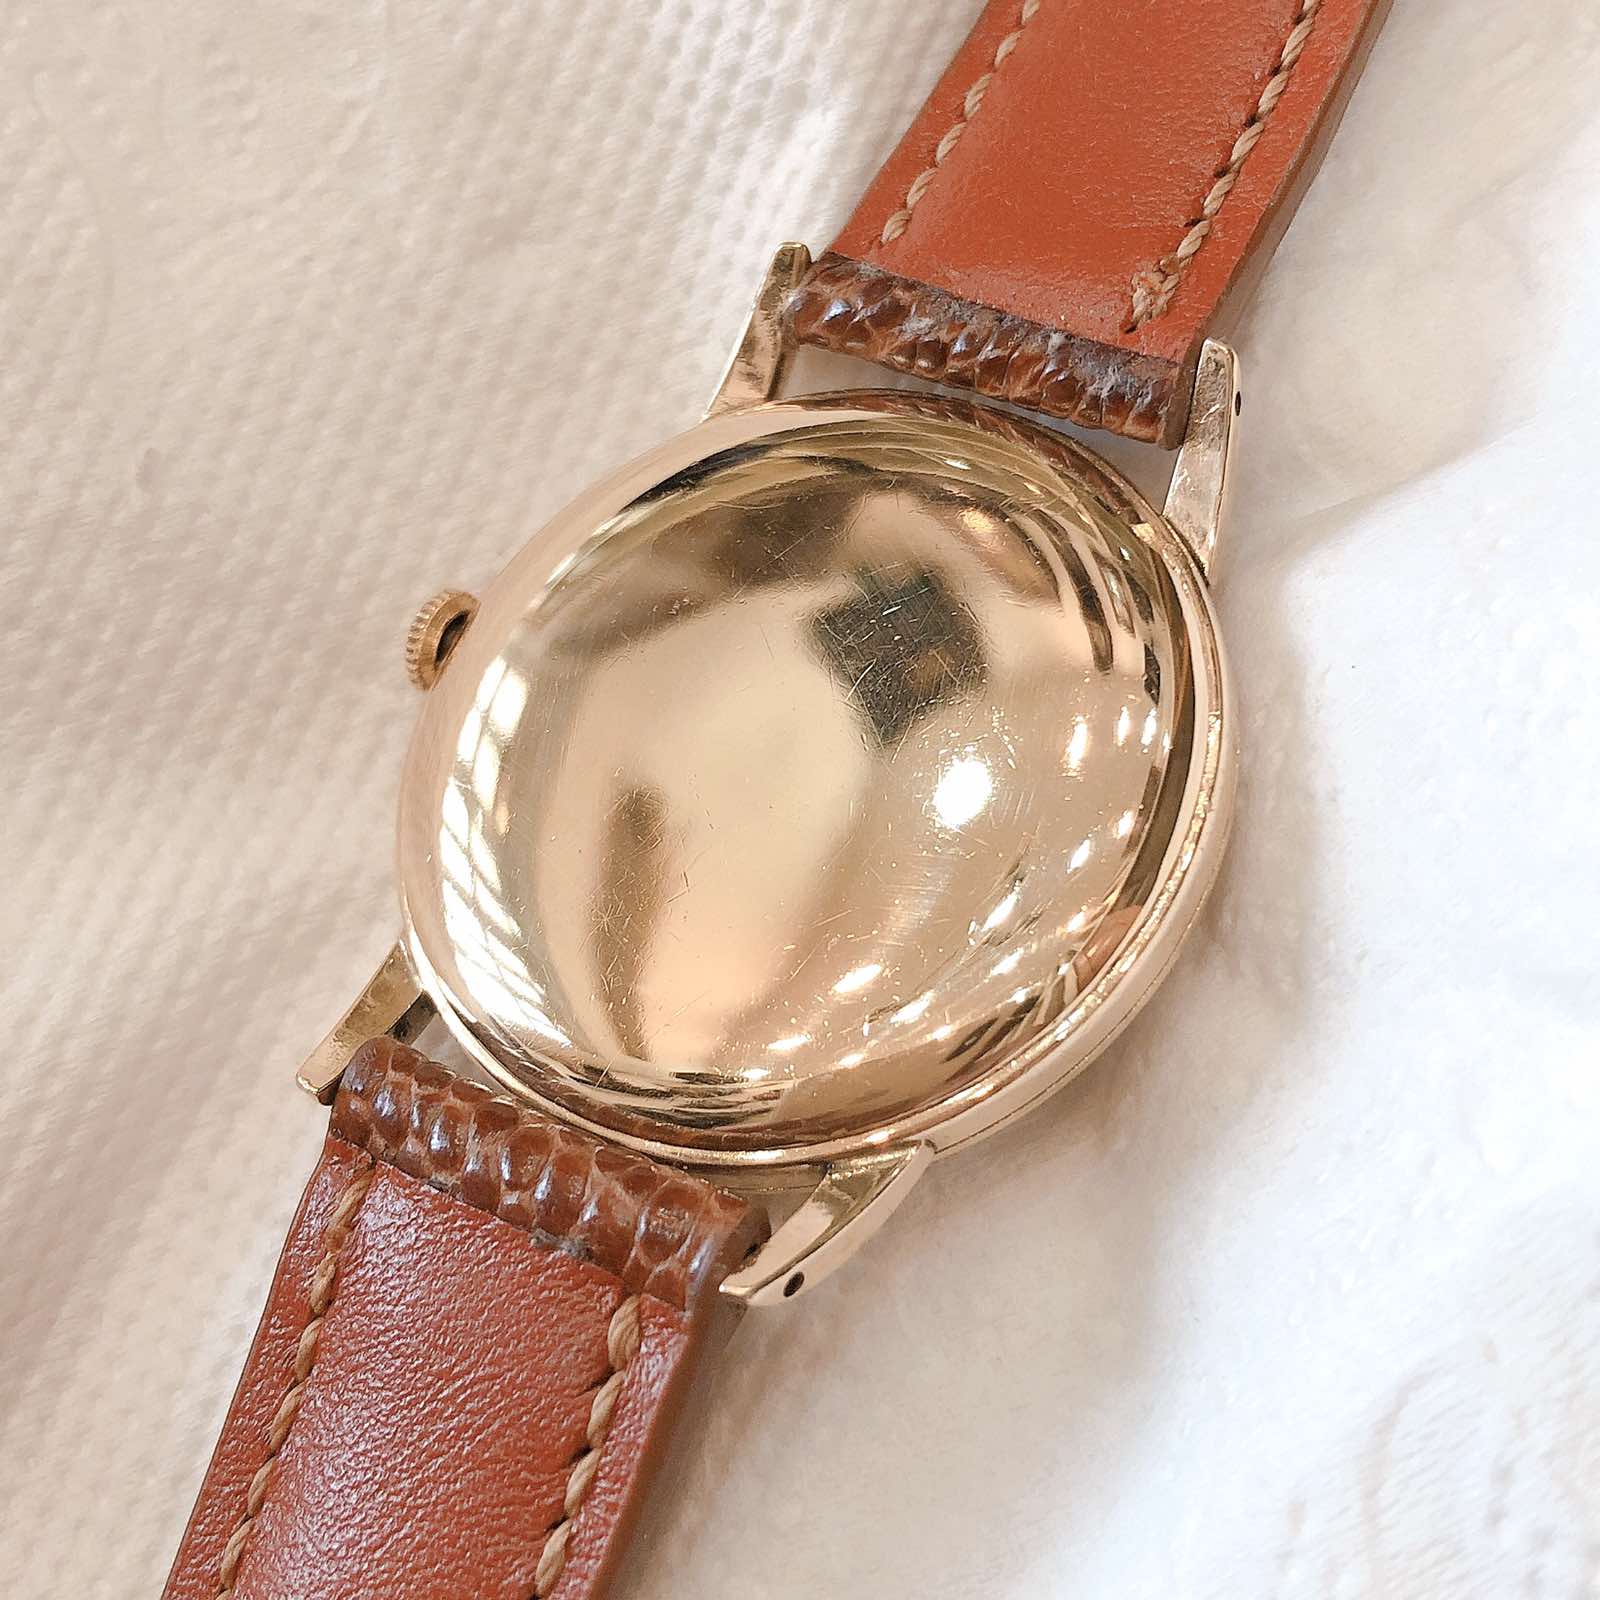 Đồng hồ cổ Seiko Sportsman lên dây 14k goldfilled chính hãng nhật bản 